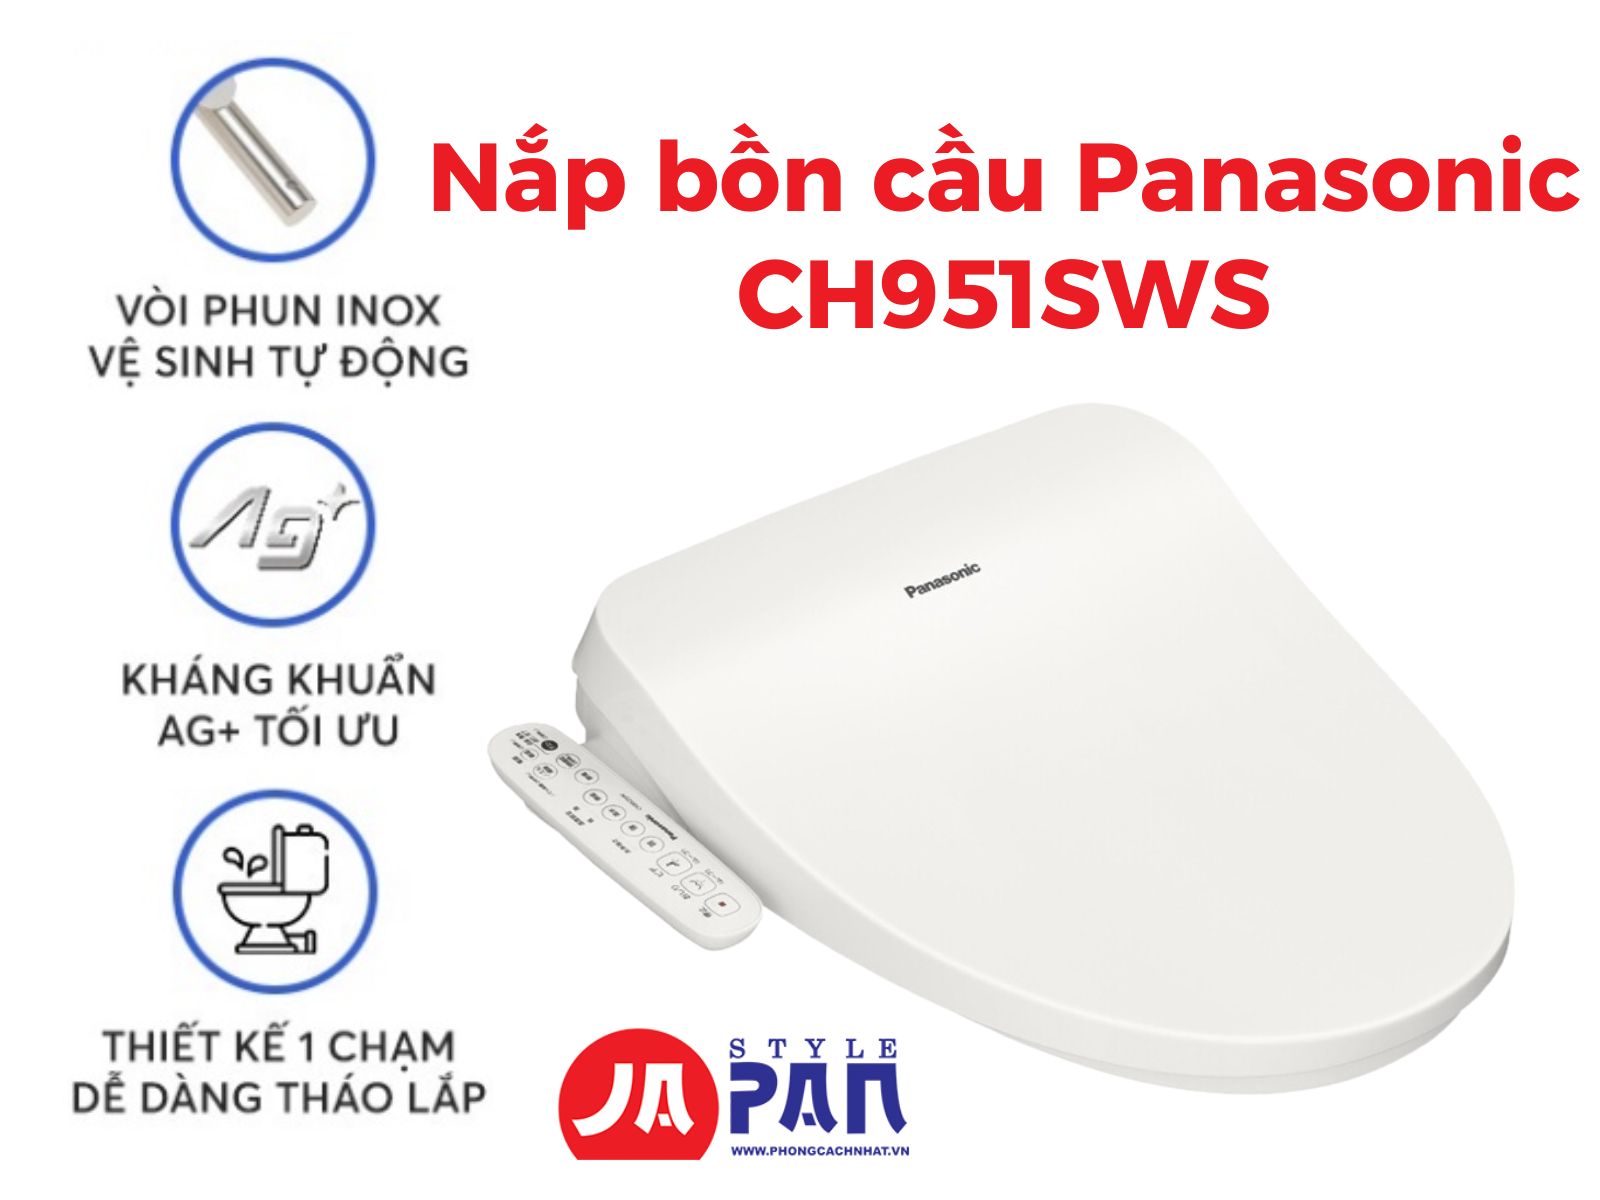 Nắp bồn cầu Panasonic CH951SWS | Nội địa Nhật